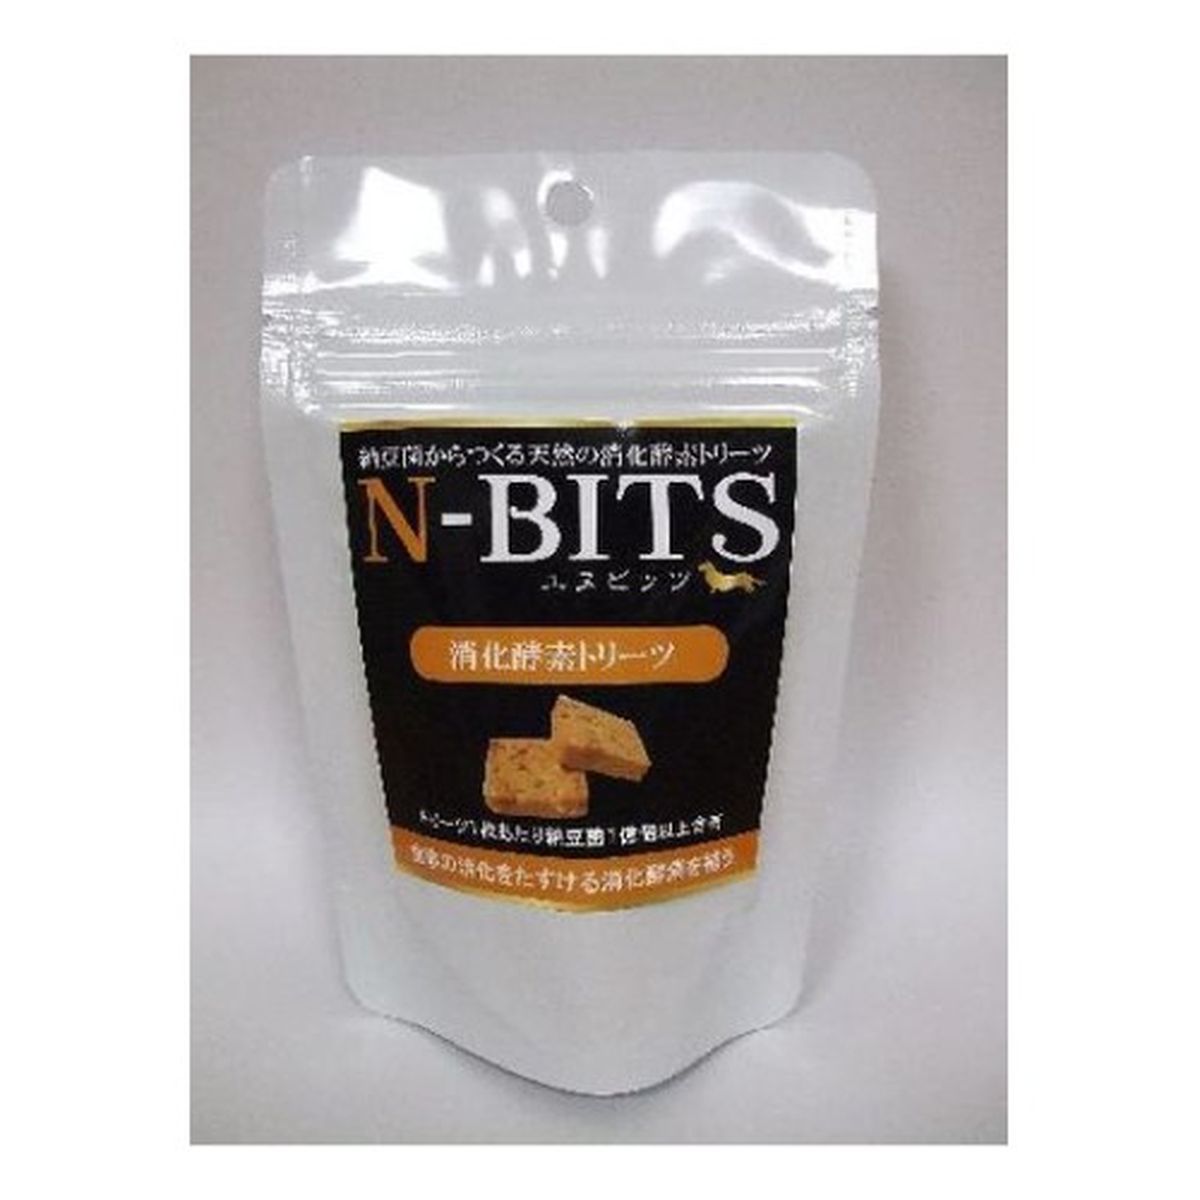 N‐BITS 消化酵素トリーツ 80g/約40枚入リ×30